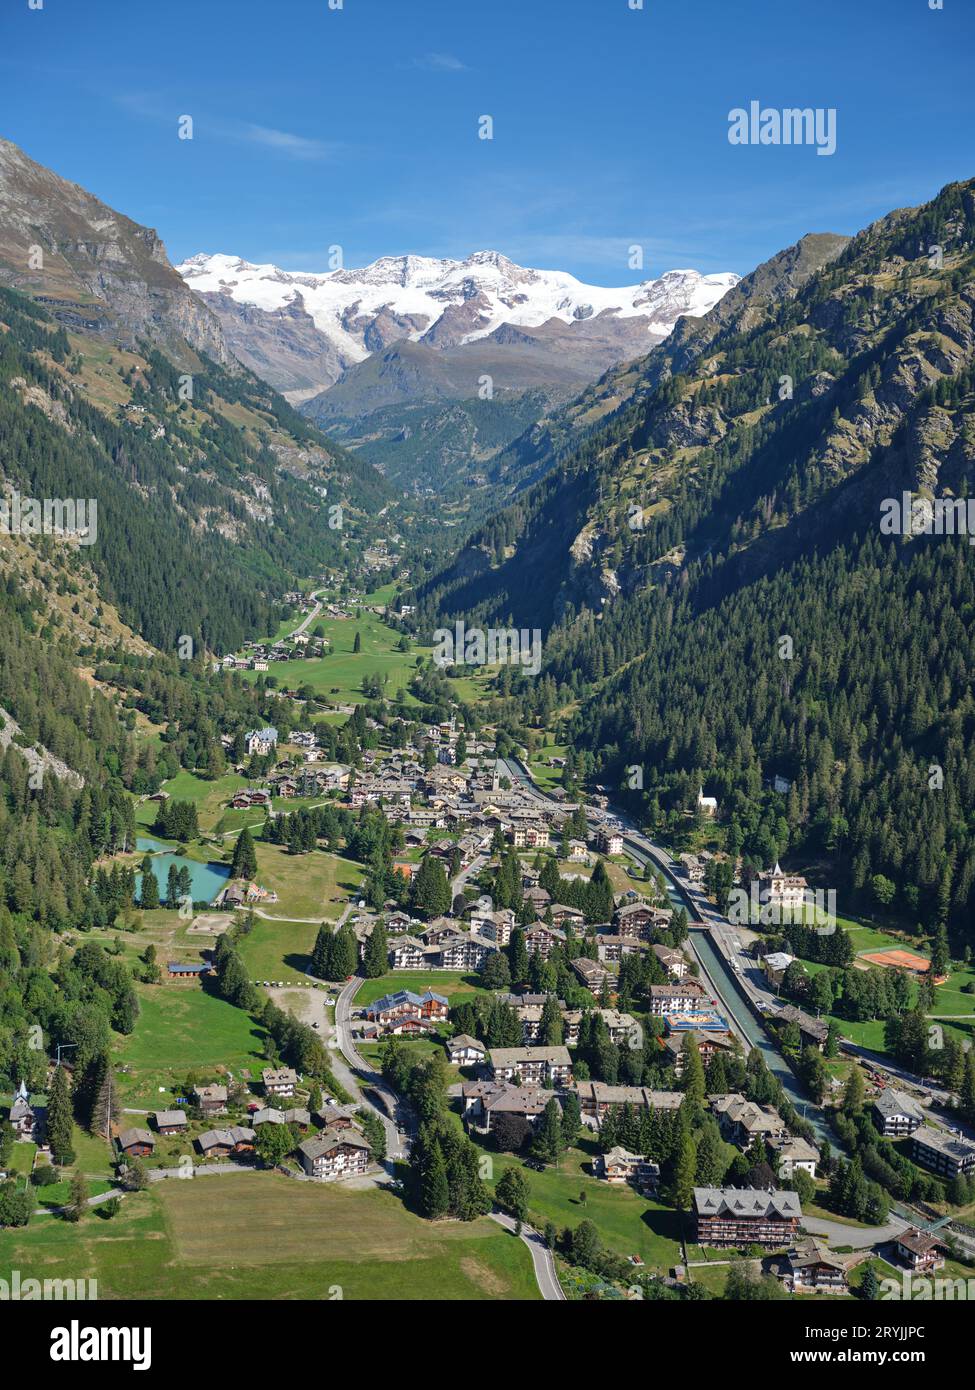 VISTA AEREA. Villaggio di Gressoney-Saint-Jean con il Monte Lyskamm (4533 metri) in lontananza. Valle d'Aosta, Italia. Foto Stock